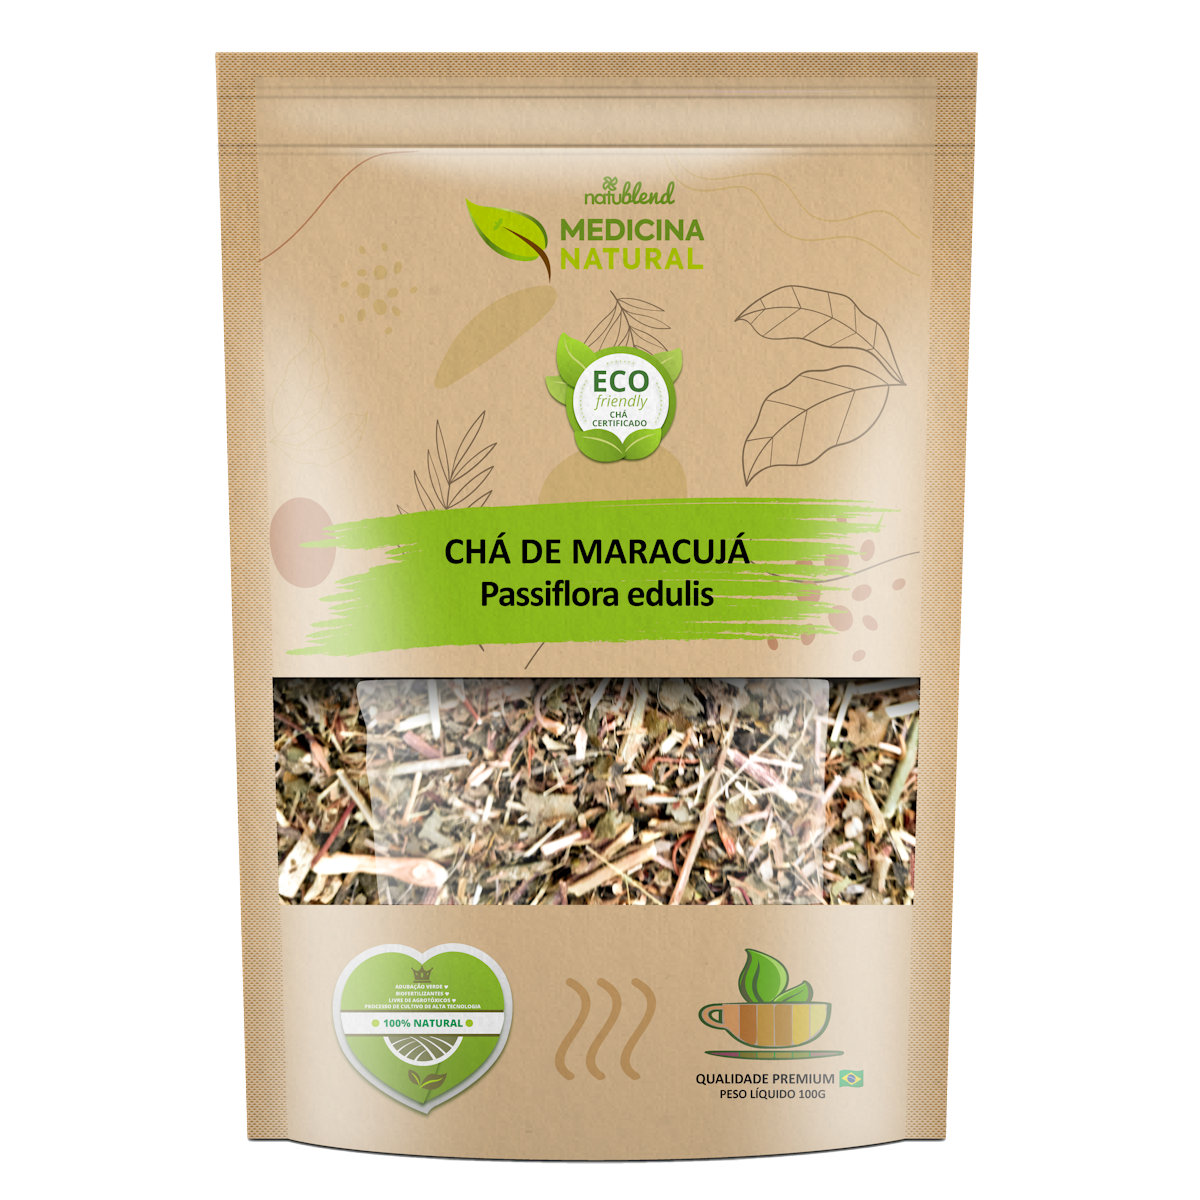 Chá de Maracujá - Passiflora edulis -Medicina Natural